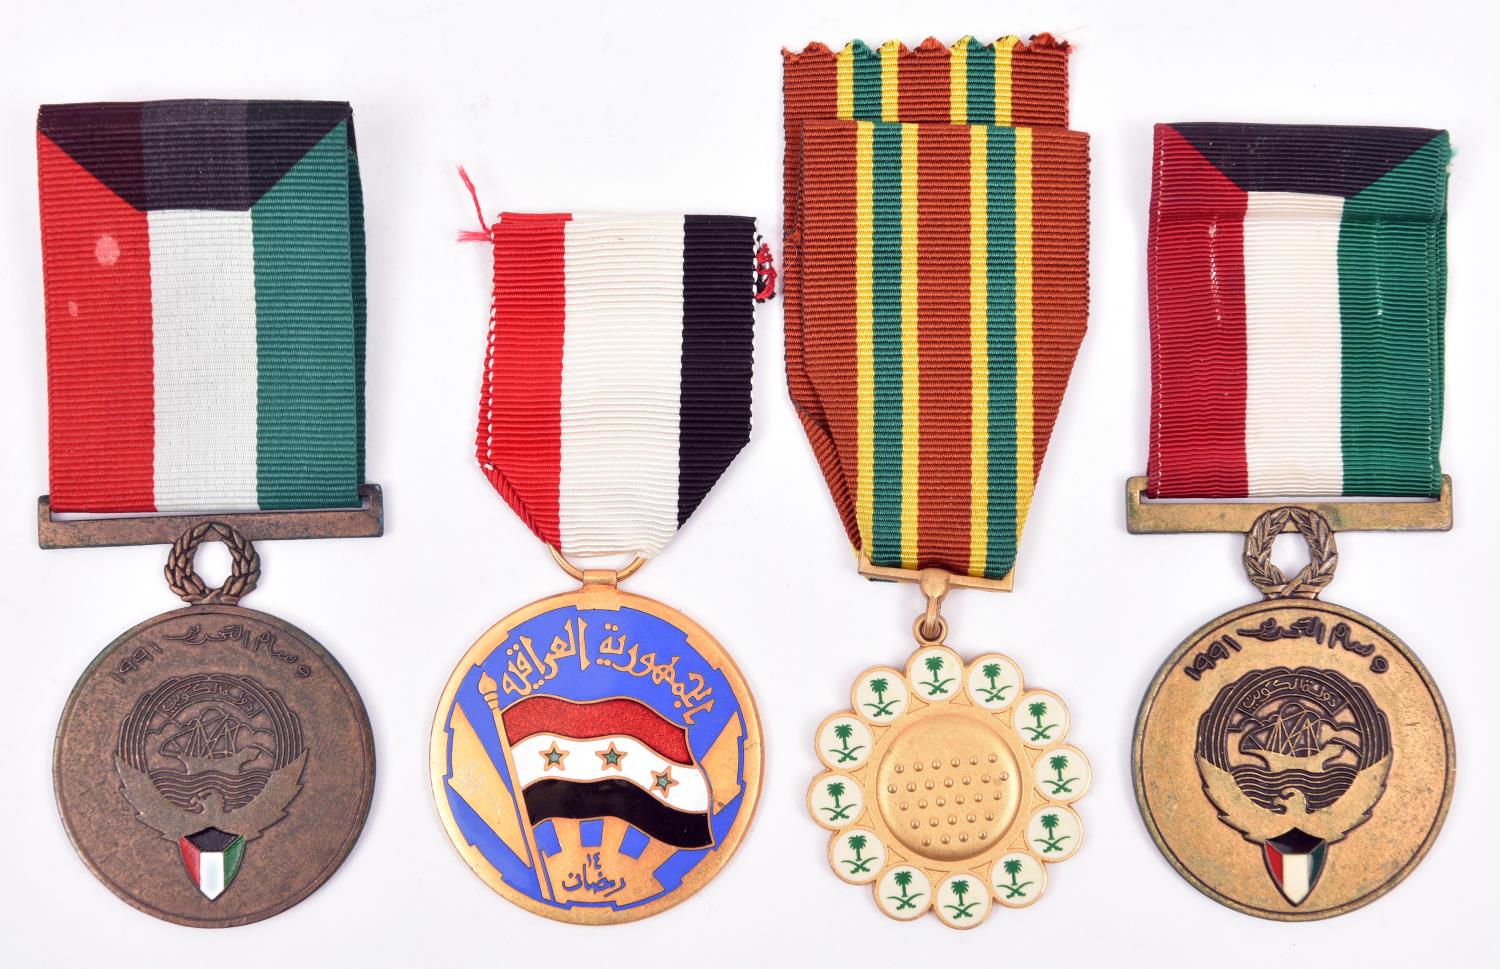 Gulf War period medals (3): Saudi Arabia combat medal Nuth Al-Ma”rkat and 2 Kuwait Liberation